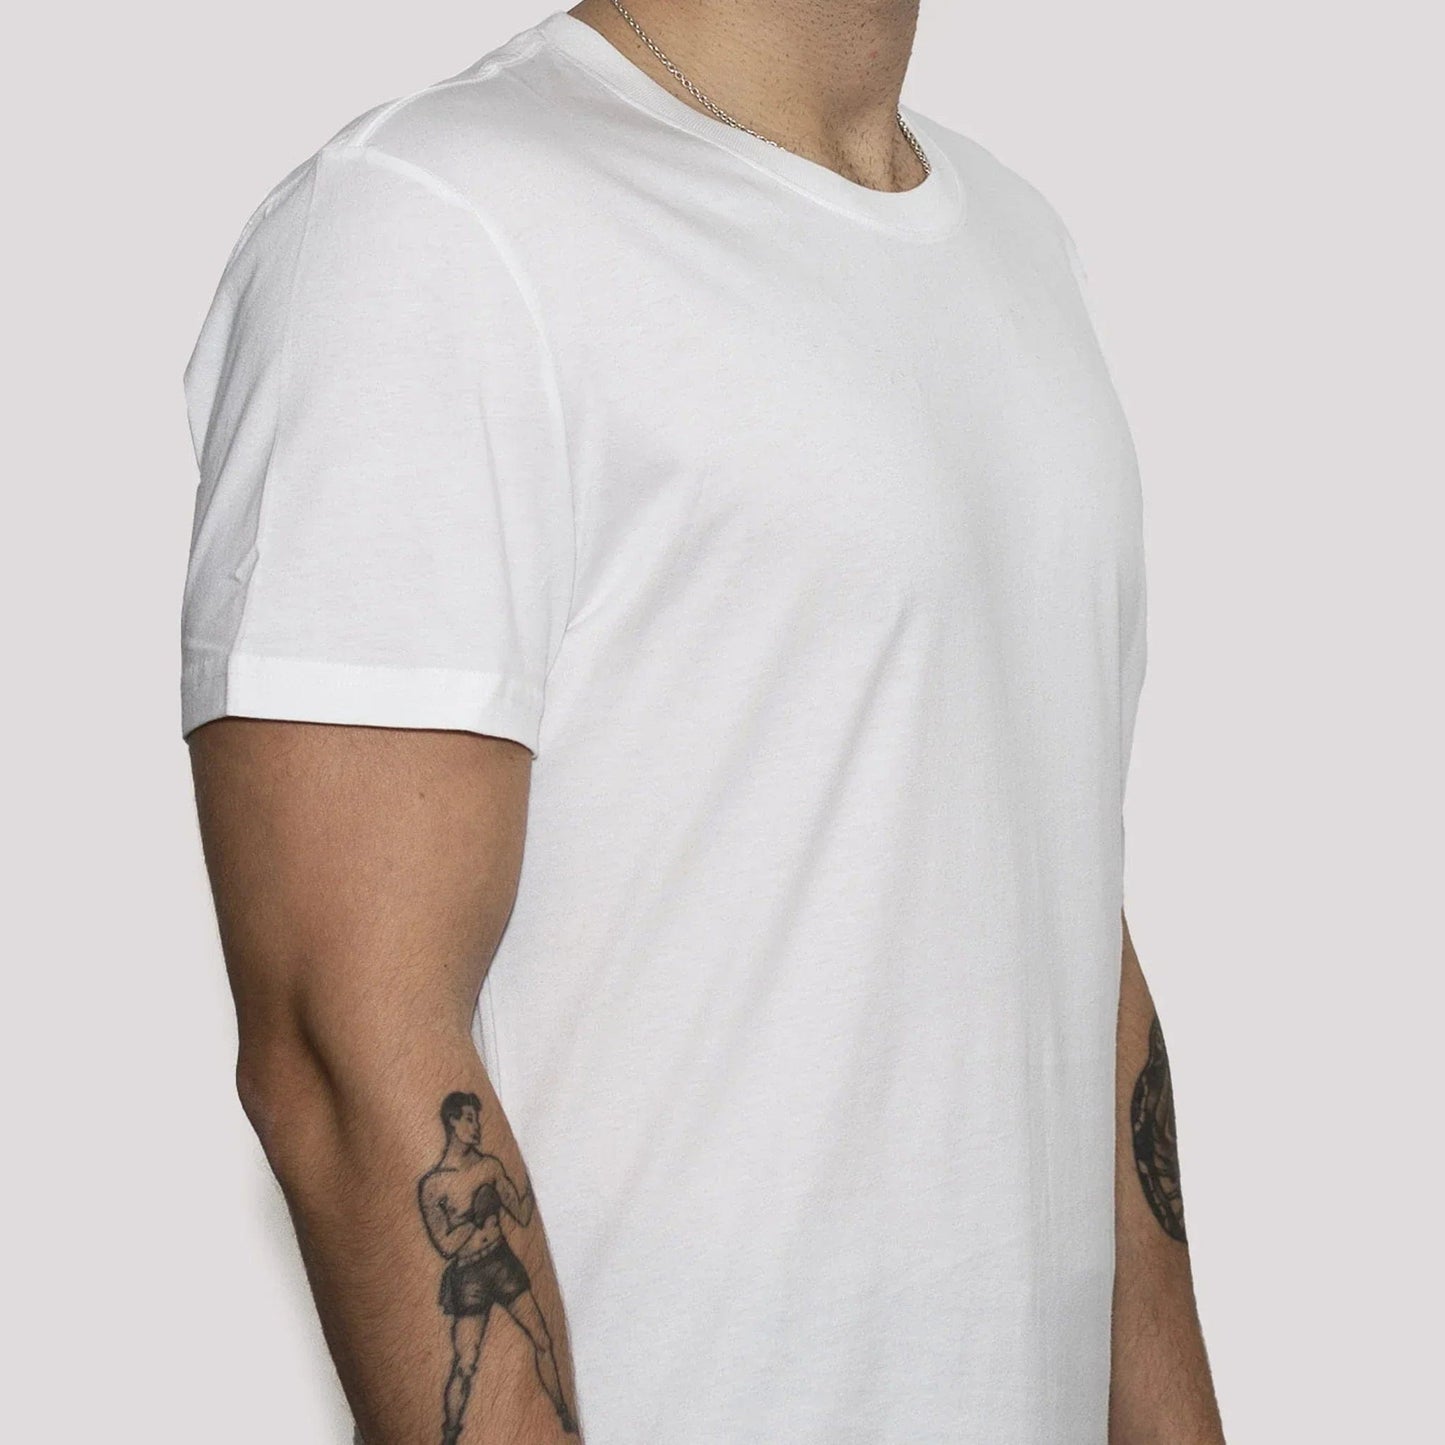 3er-Pack | Herren-T-Shirts, recycelte Baumwolle, Weiß